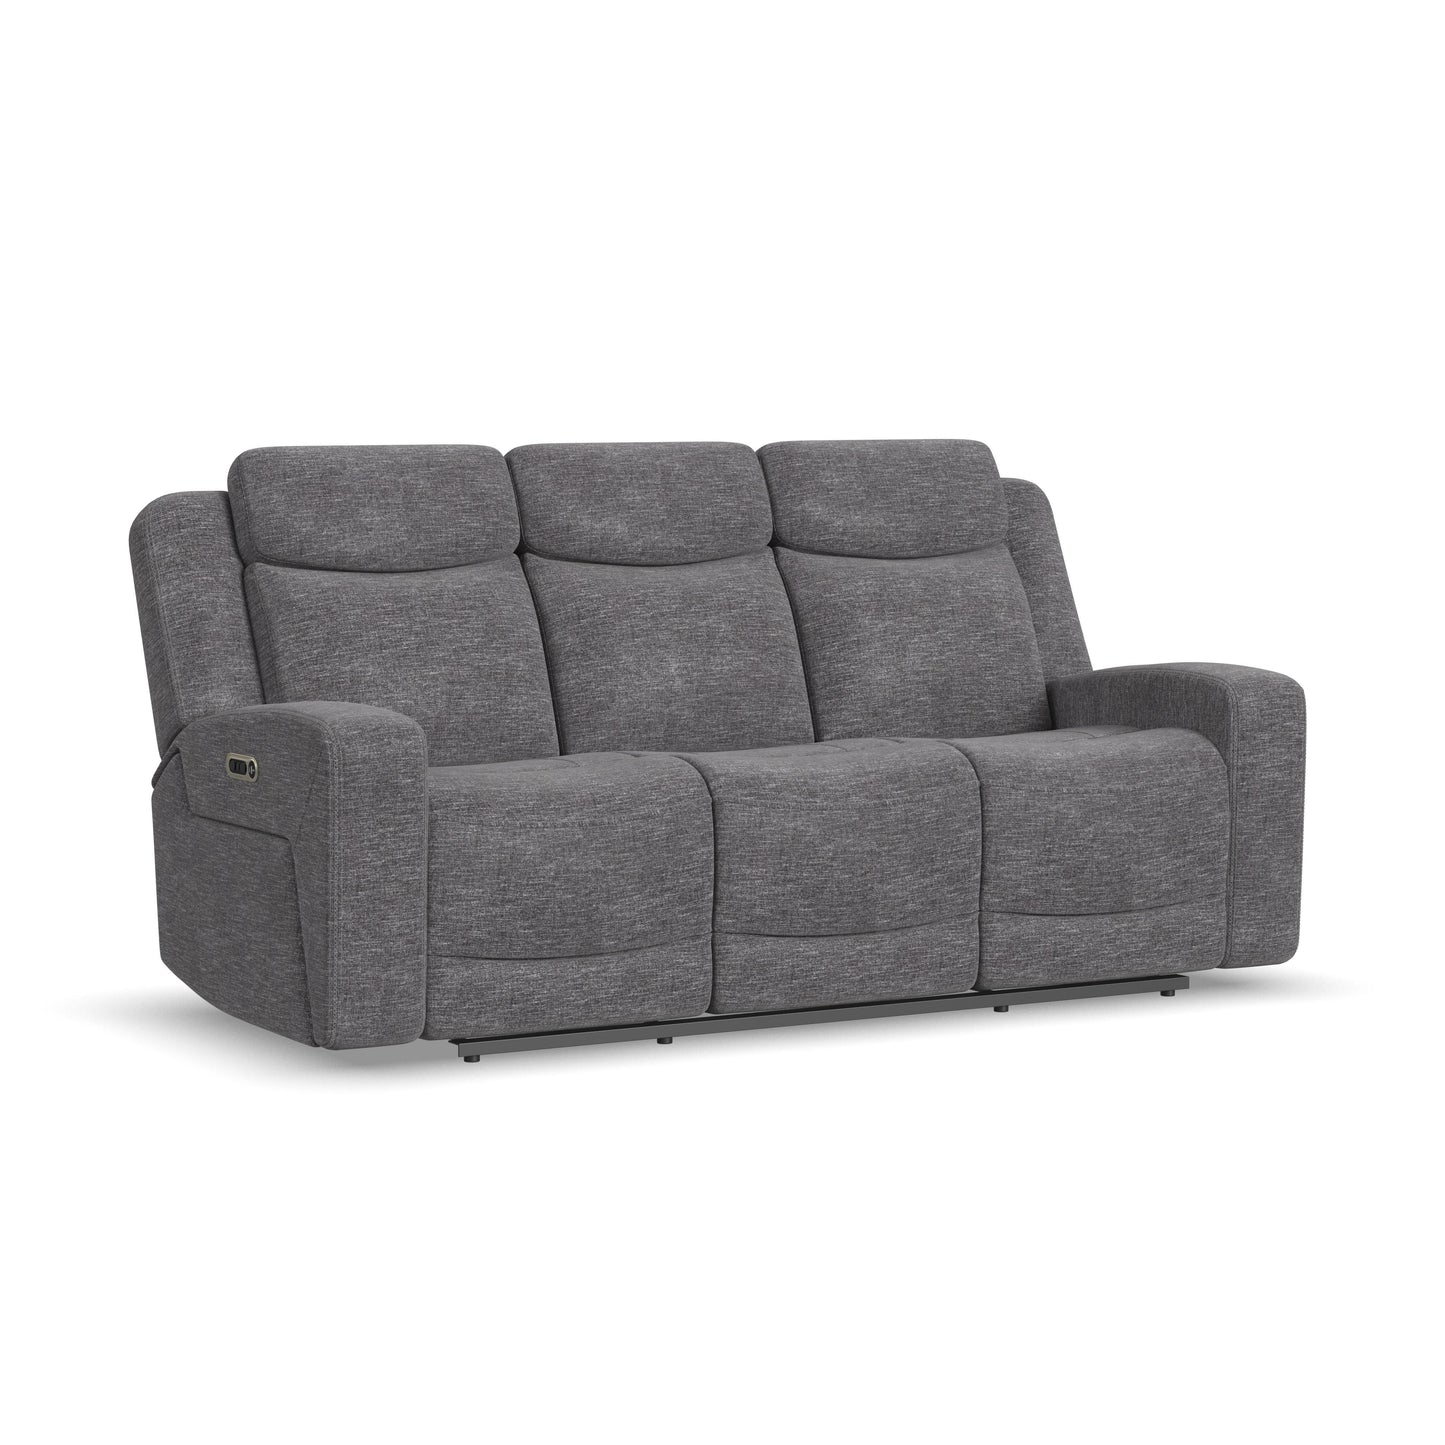 Ridge - Power Reclining Sofa With Power Headrests - Granite